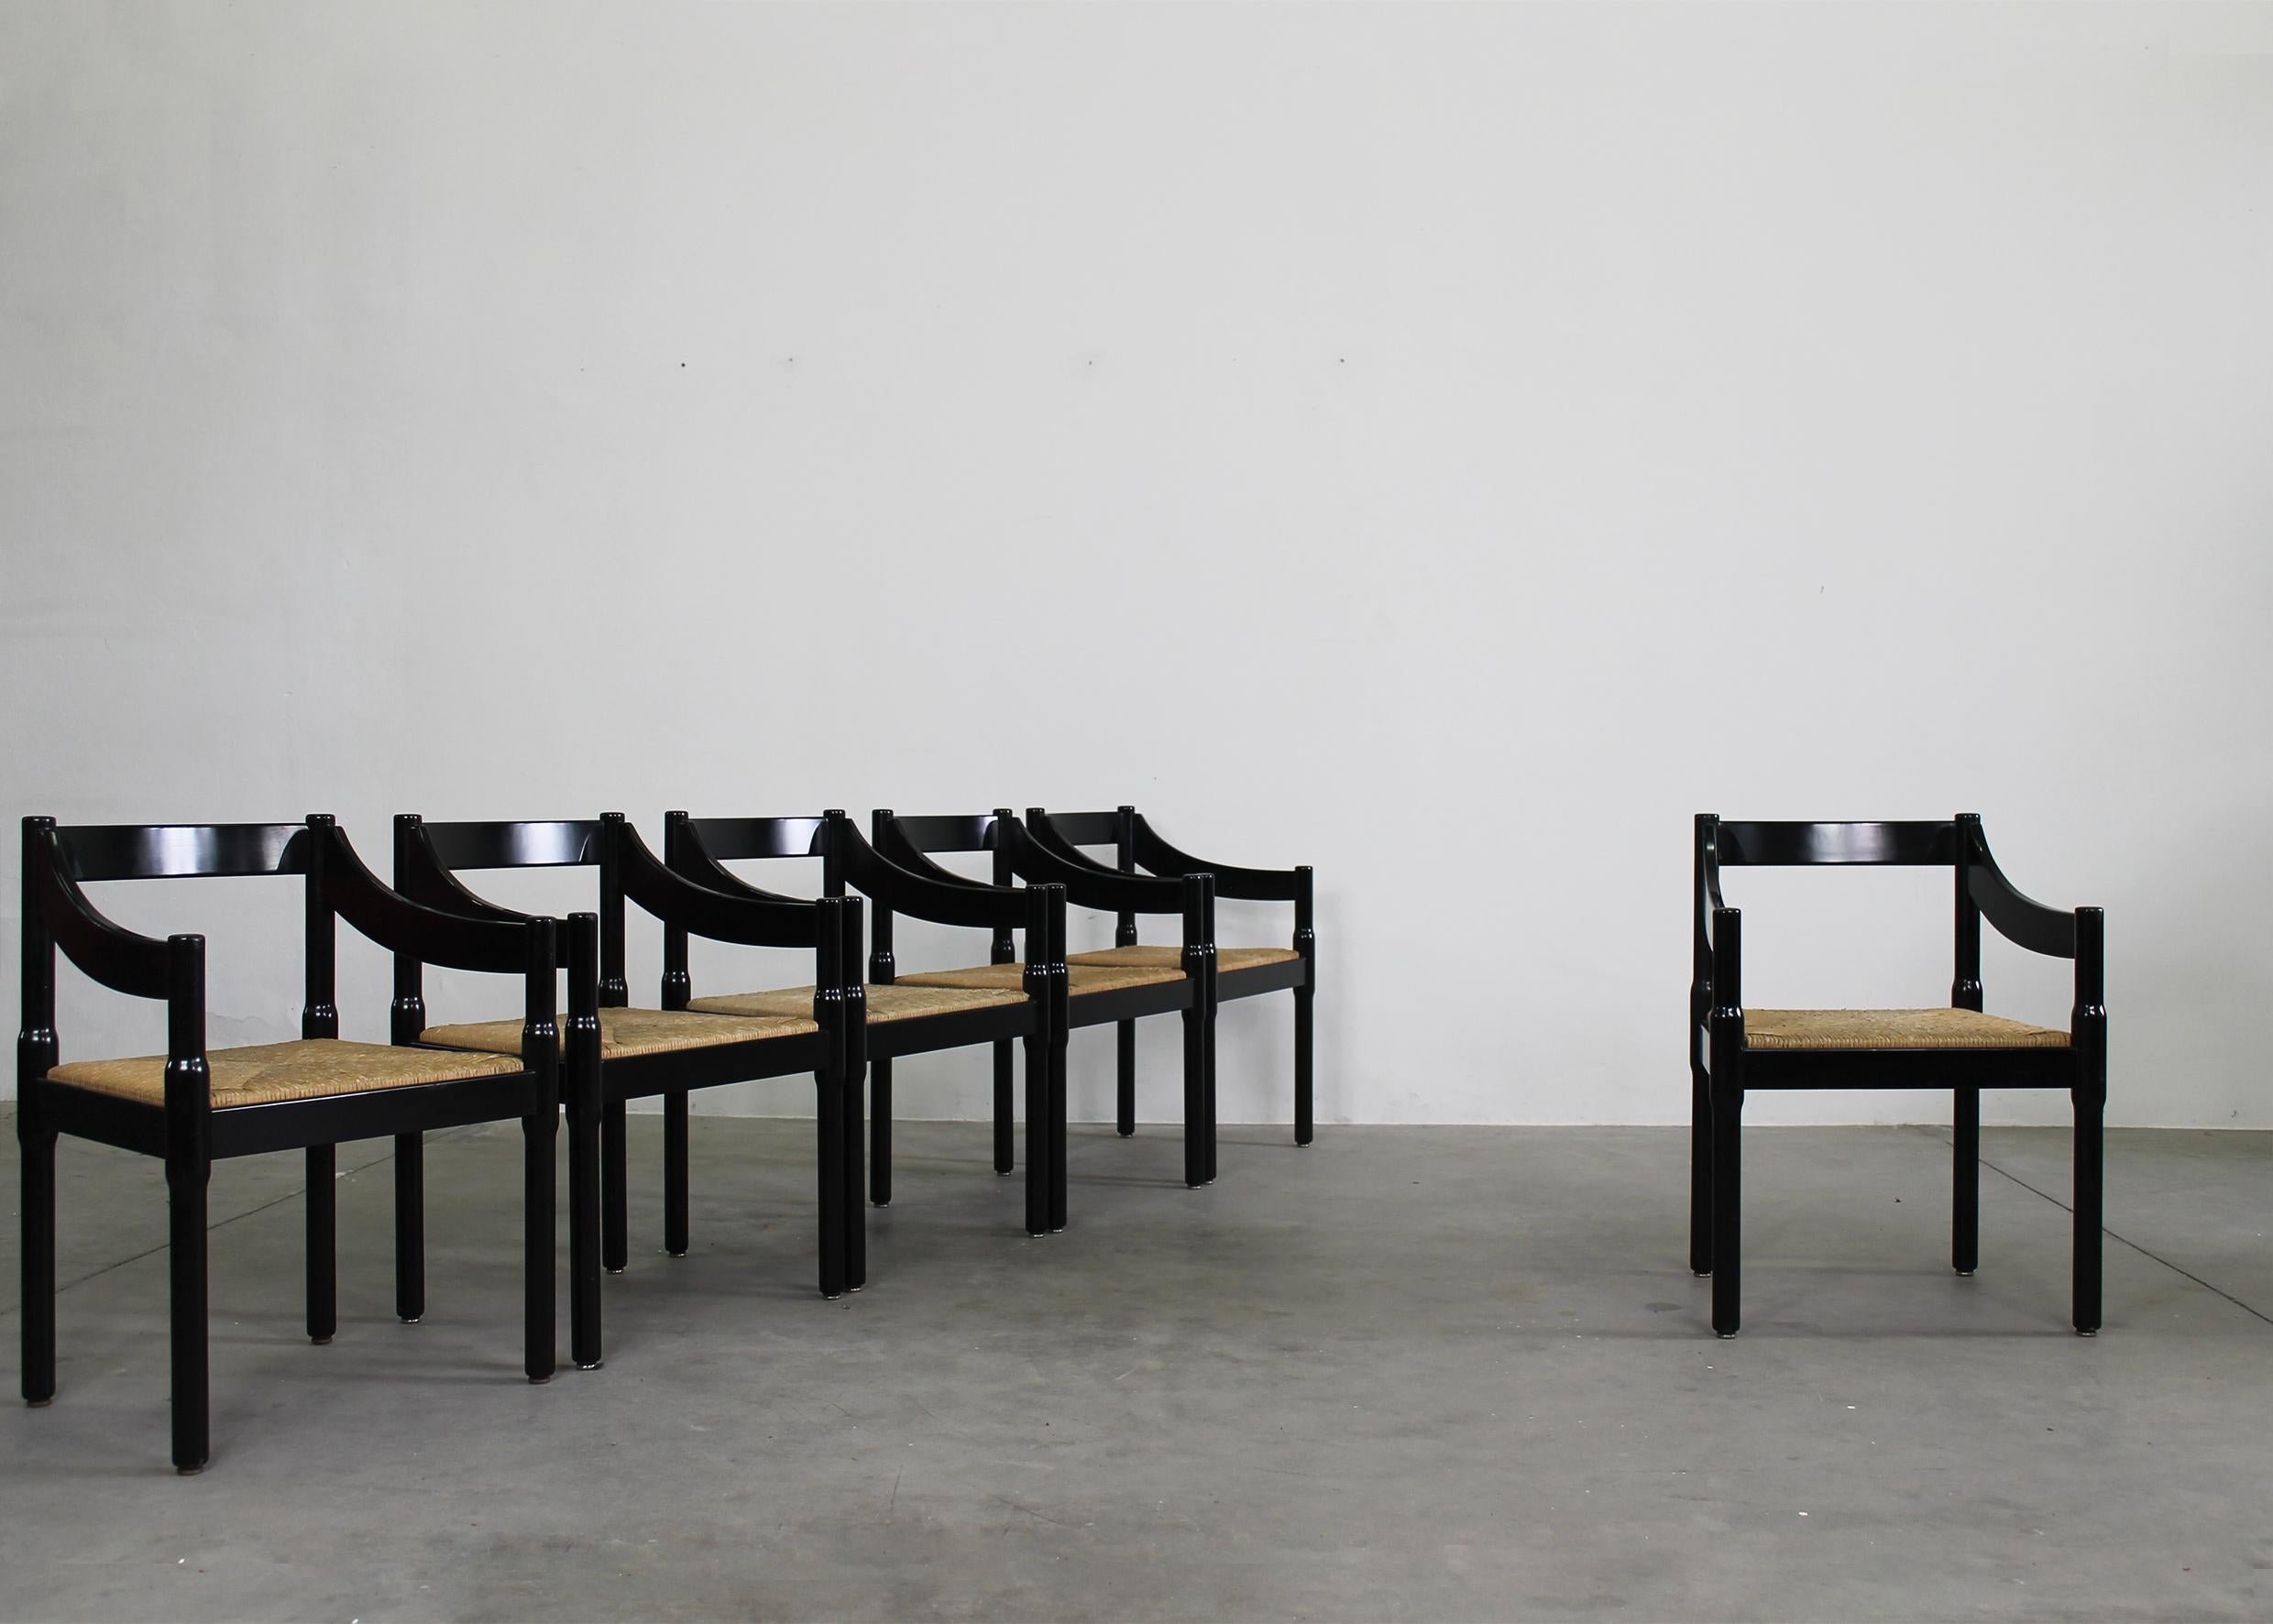 Satz von sechs Stühlen Carimate mit Struktur aus schwarz lackiertem Buchenholz und Sitz aus geflochtenem Stroh, entworfen von Vico Magistretti und hergestellt von Cassina in den 1960er Jahren. 

Der Carimate-Stuhl wurde ursprünglich 1959 von Vico